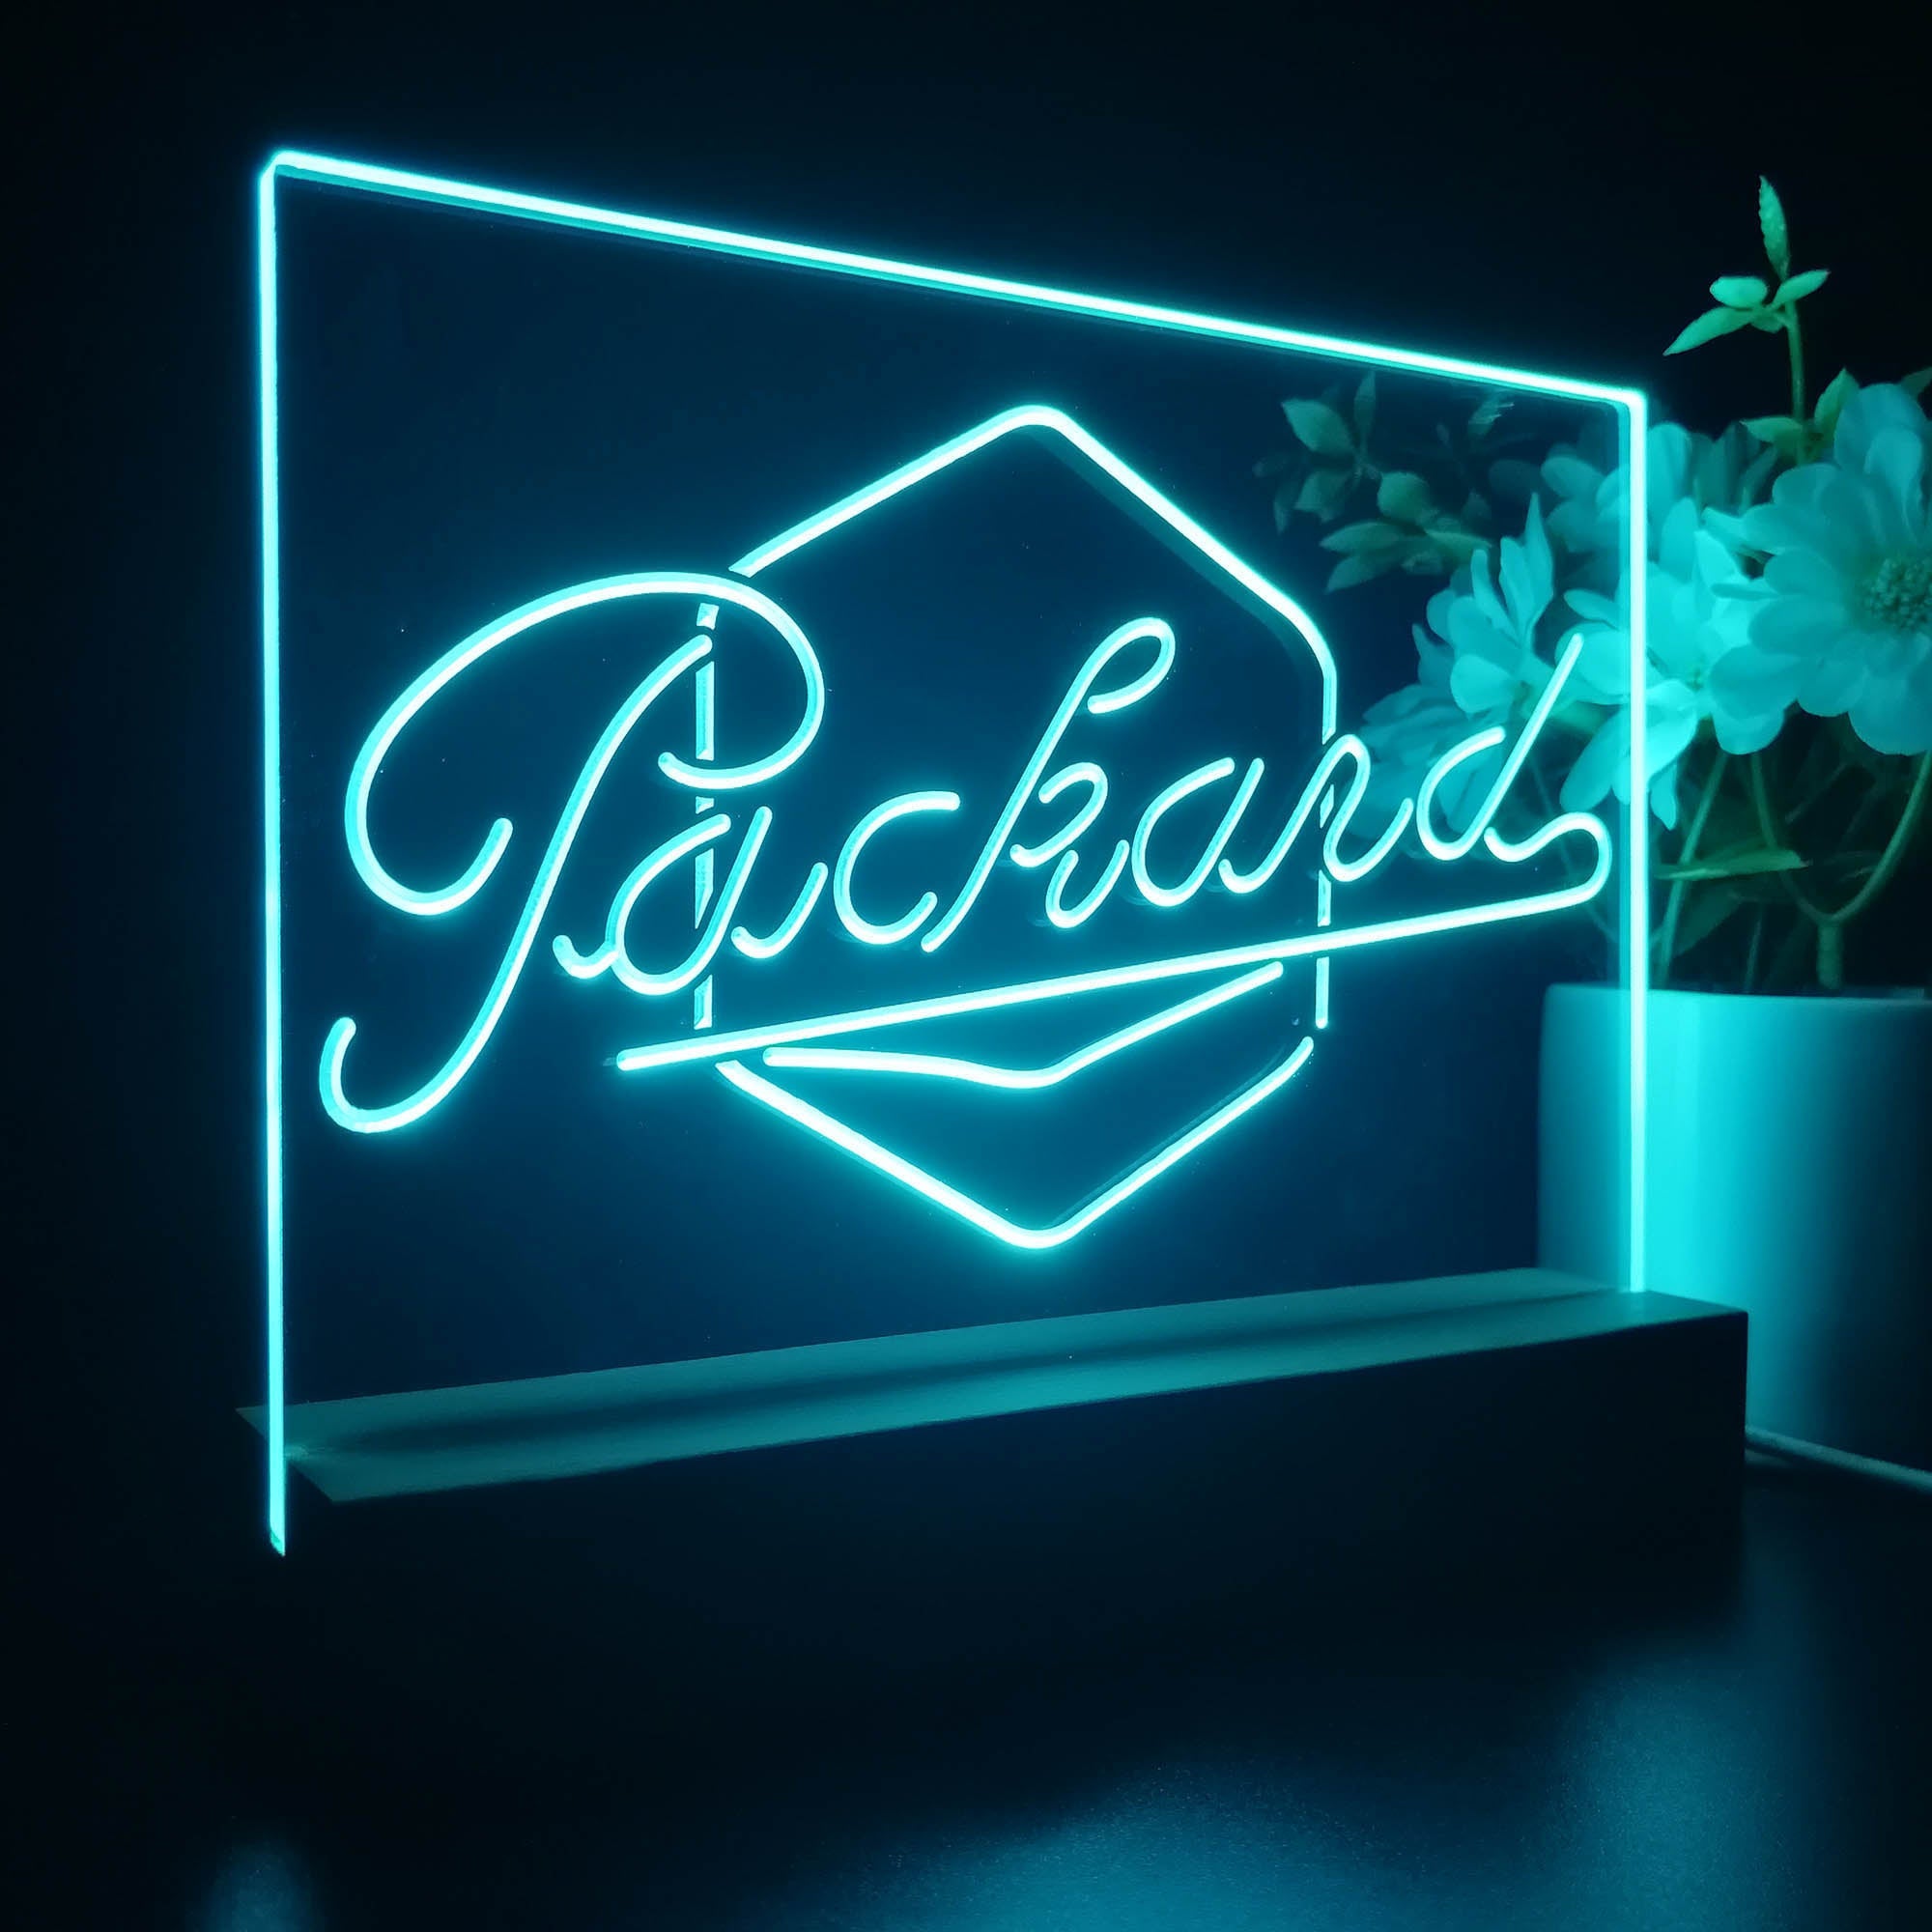 Packard Auto 3D Illusion Night Light Desk Lamp